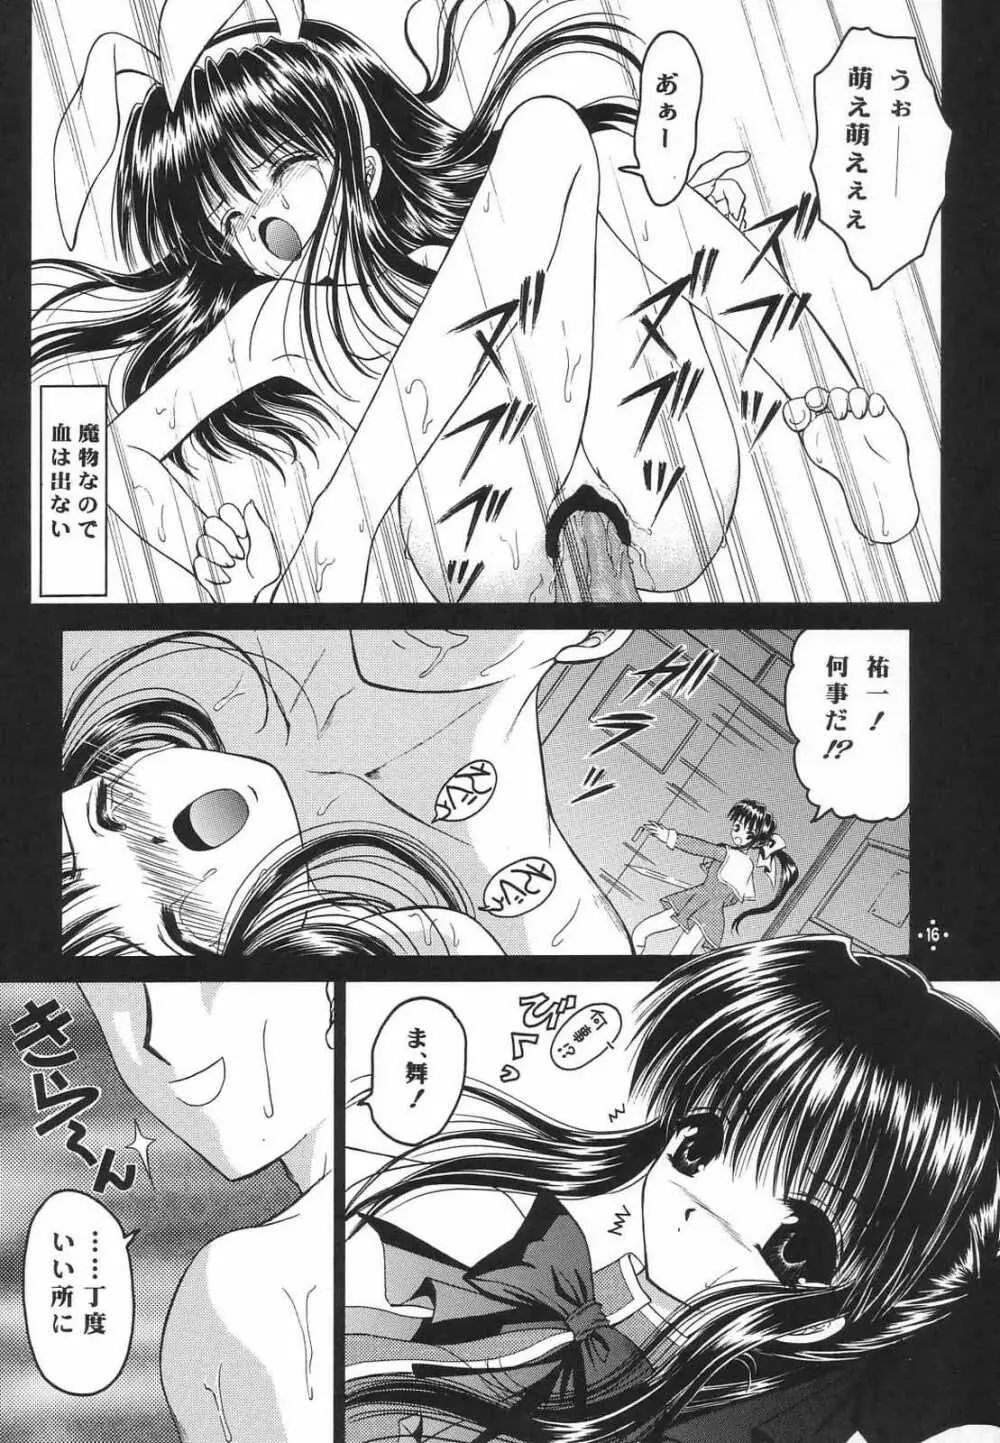 Shimensoka 8 15ページ